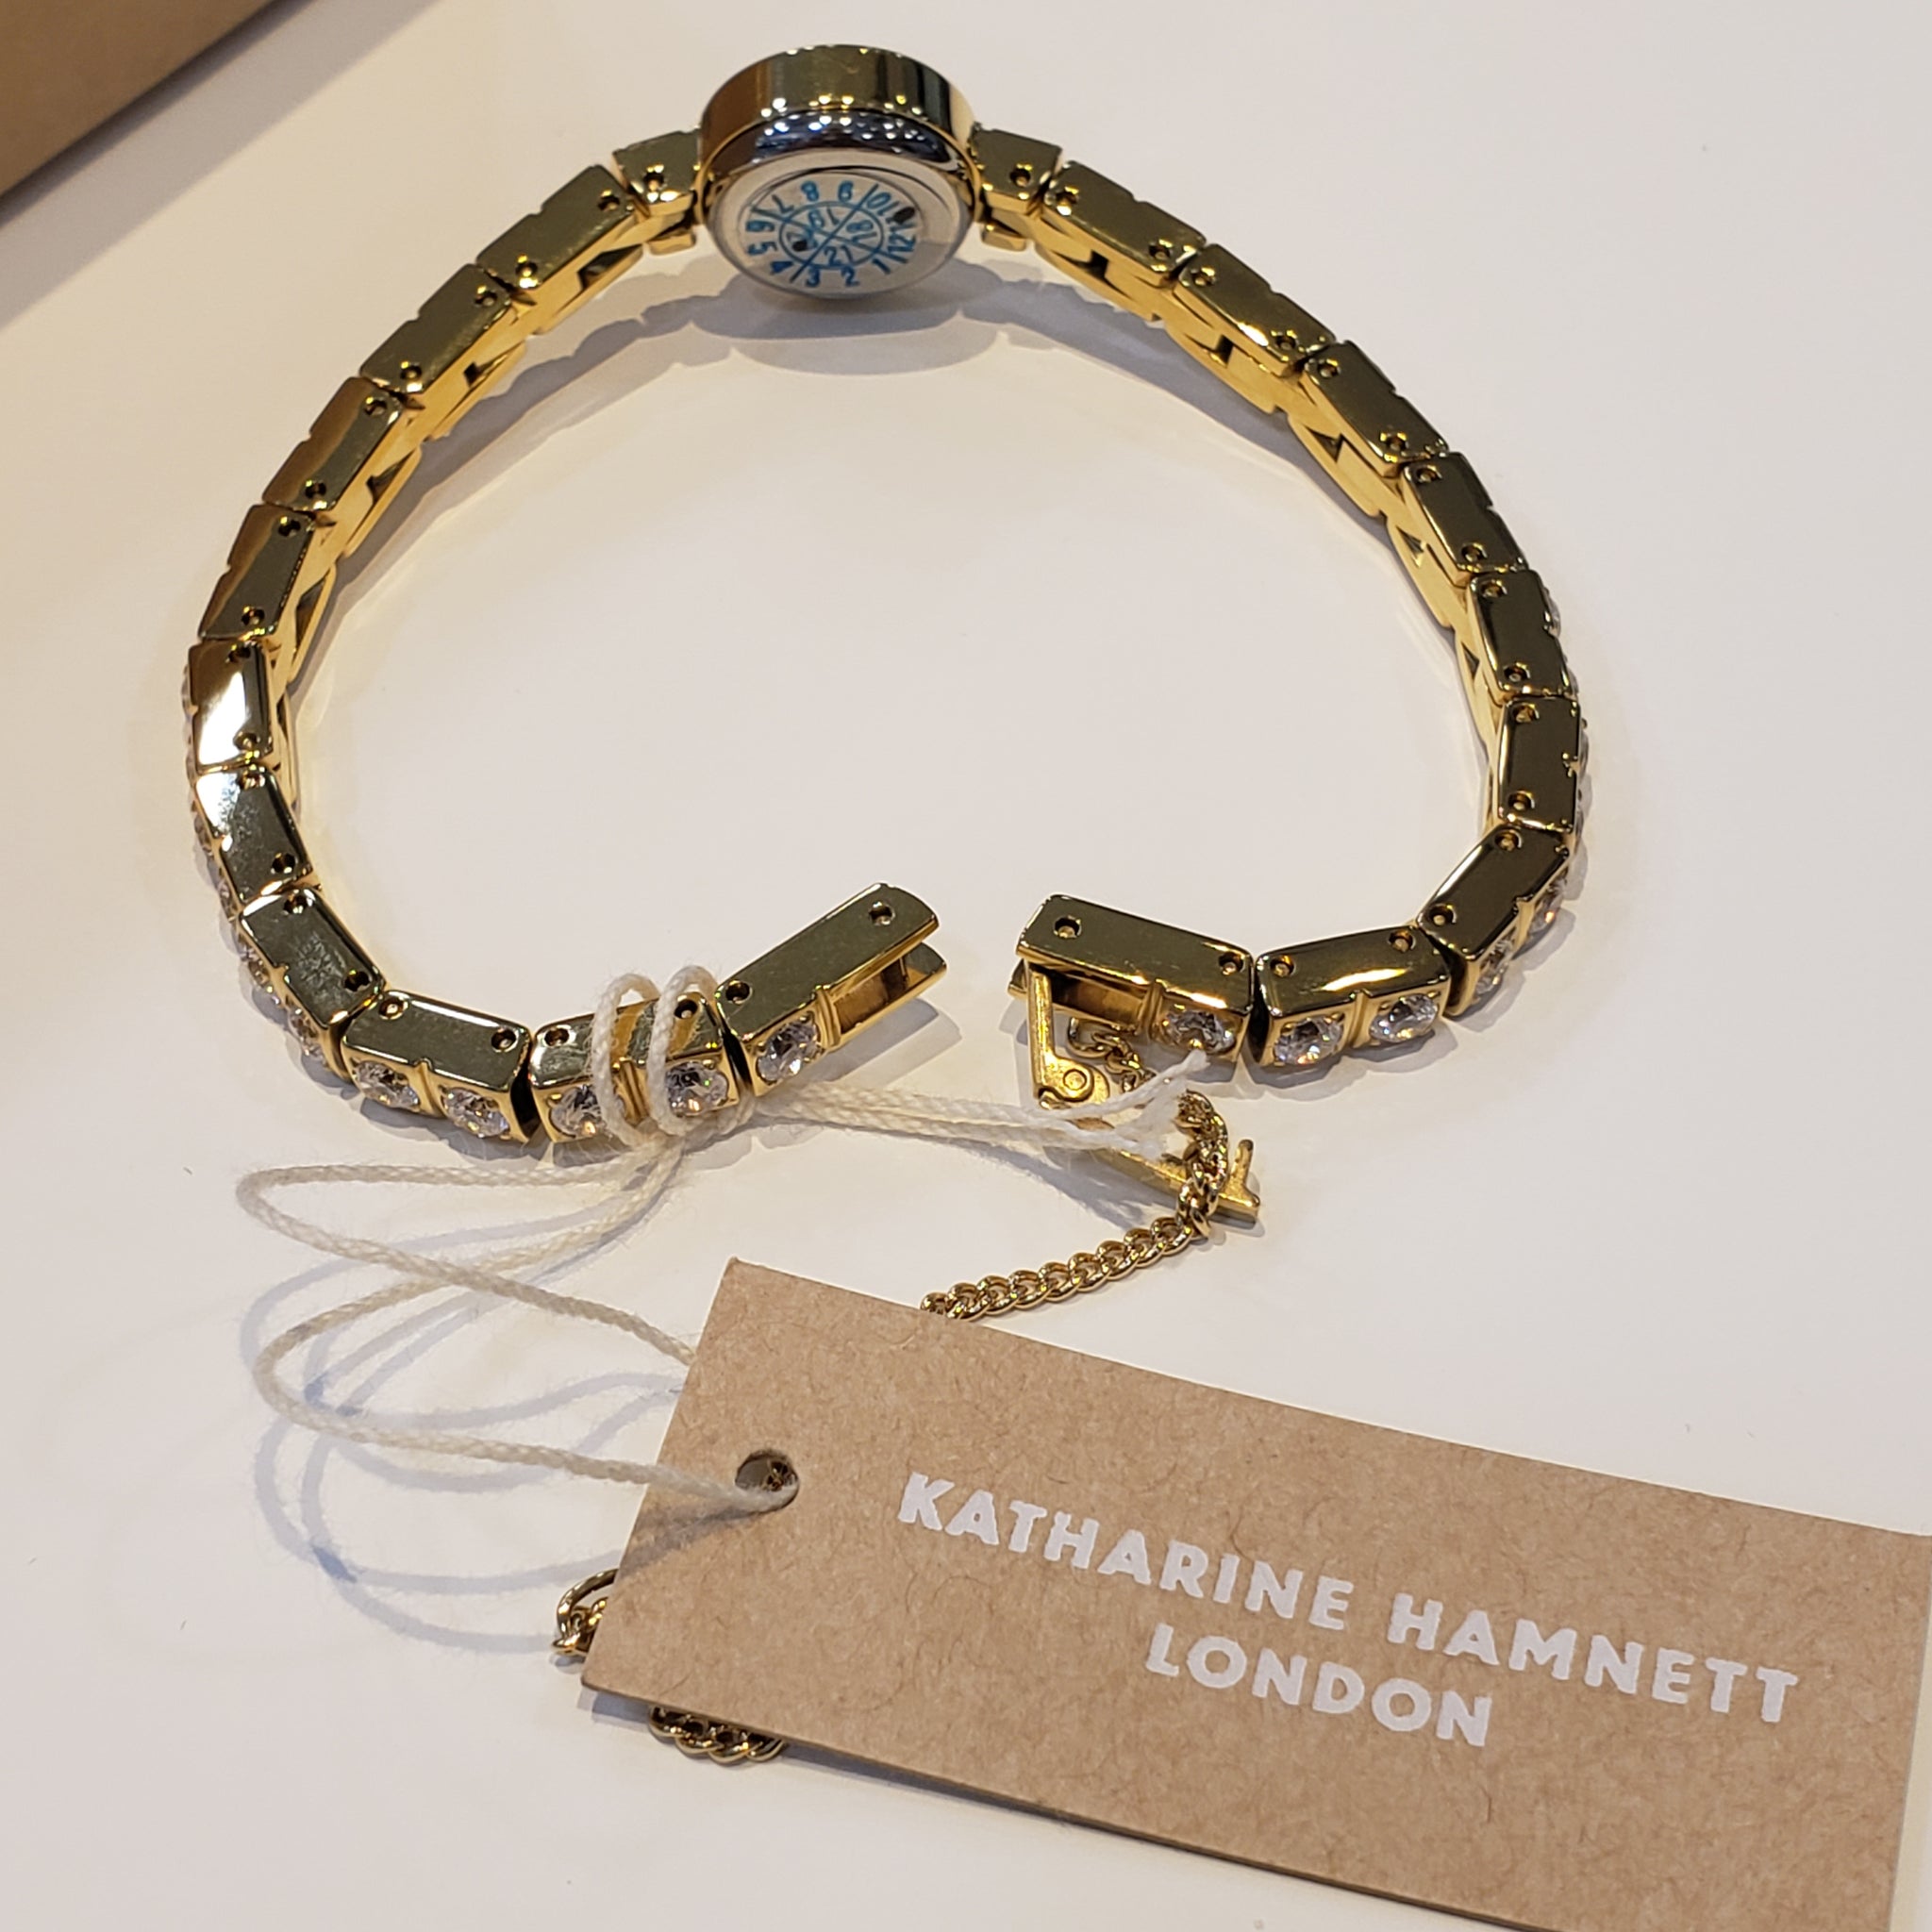 Katharine Hamnett 手錶- KH7813-B04D(金色) / KH7713-B04D (玫瑰金色 